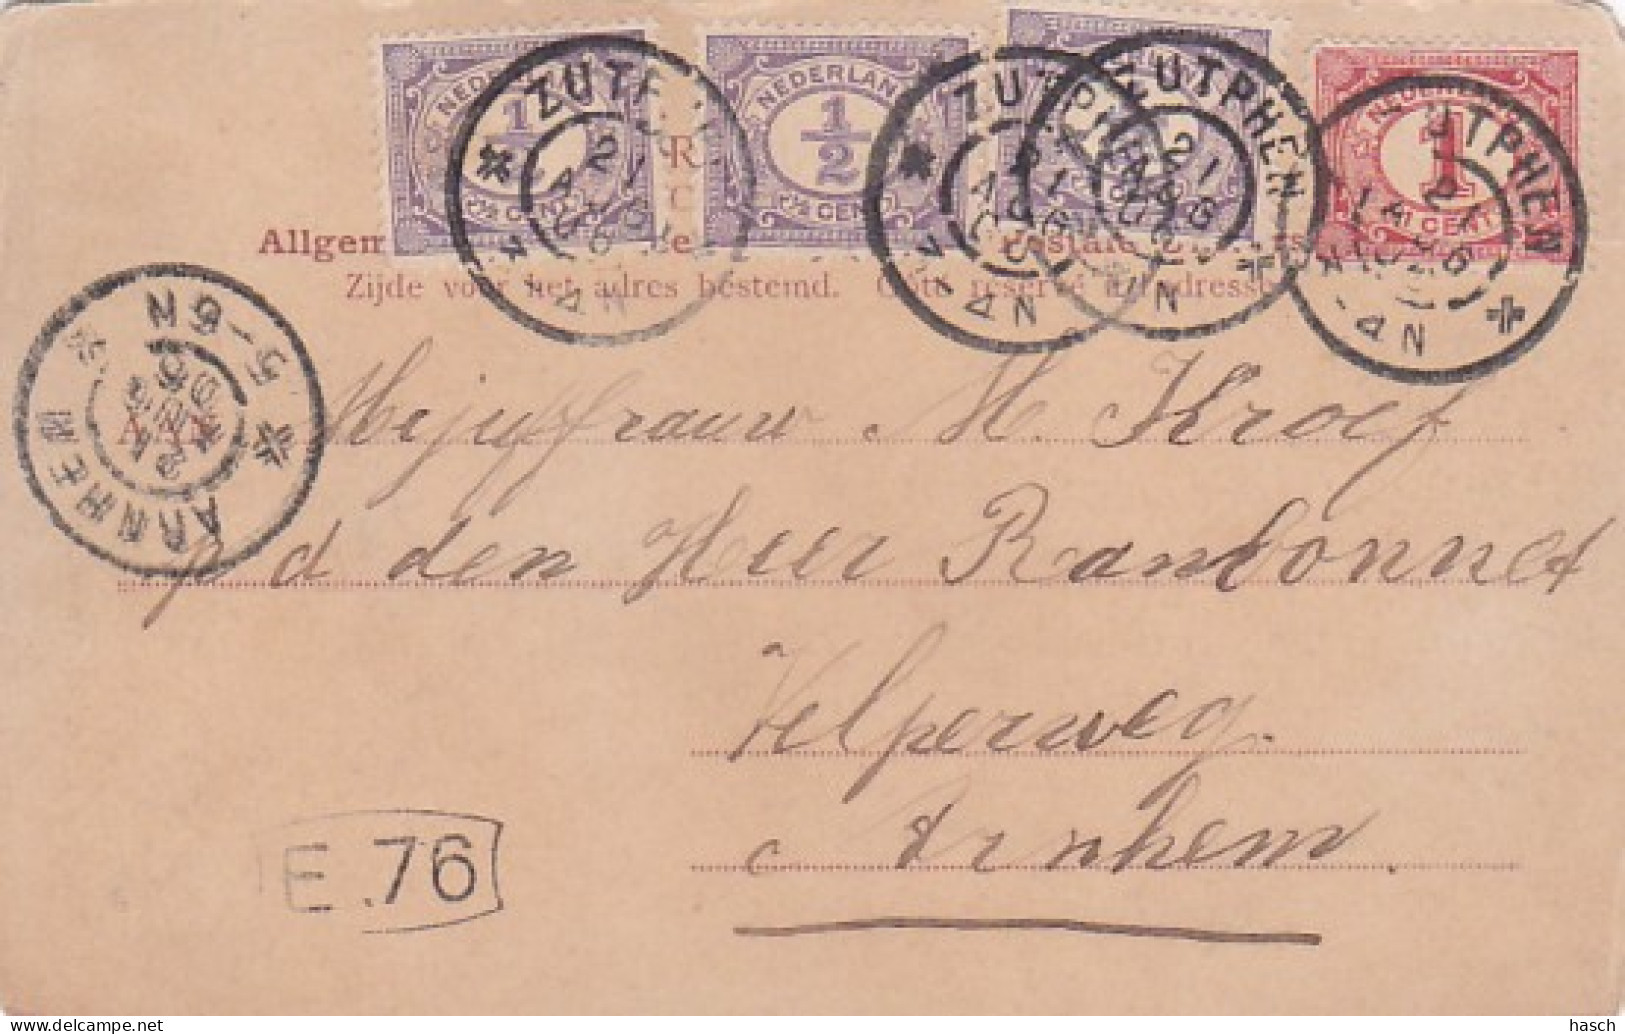 2603536Zutphen, Vischpoort – S.t Walburgskerk. (poststempel 1906)(zie Hoeken En Randen) - Zutphen